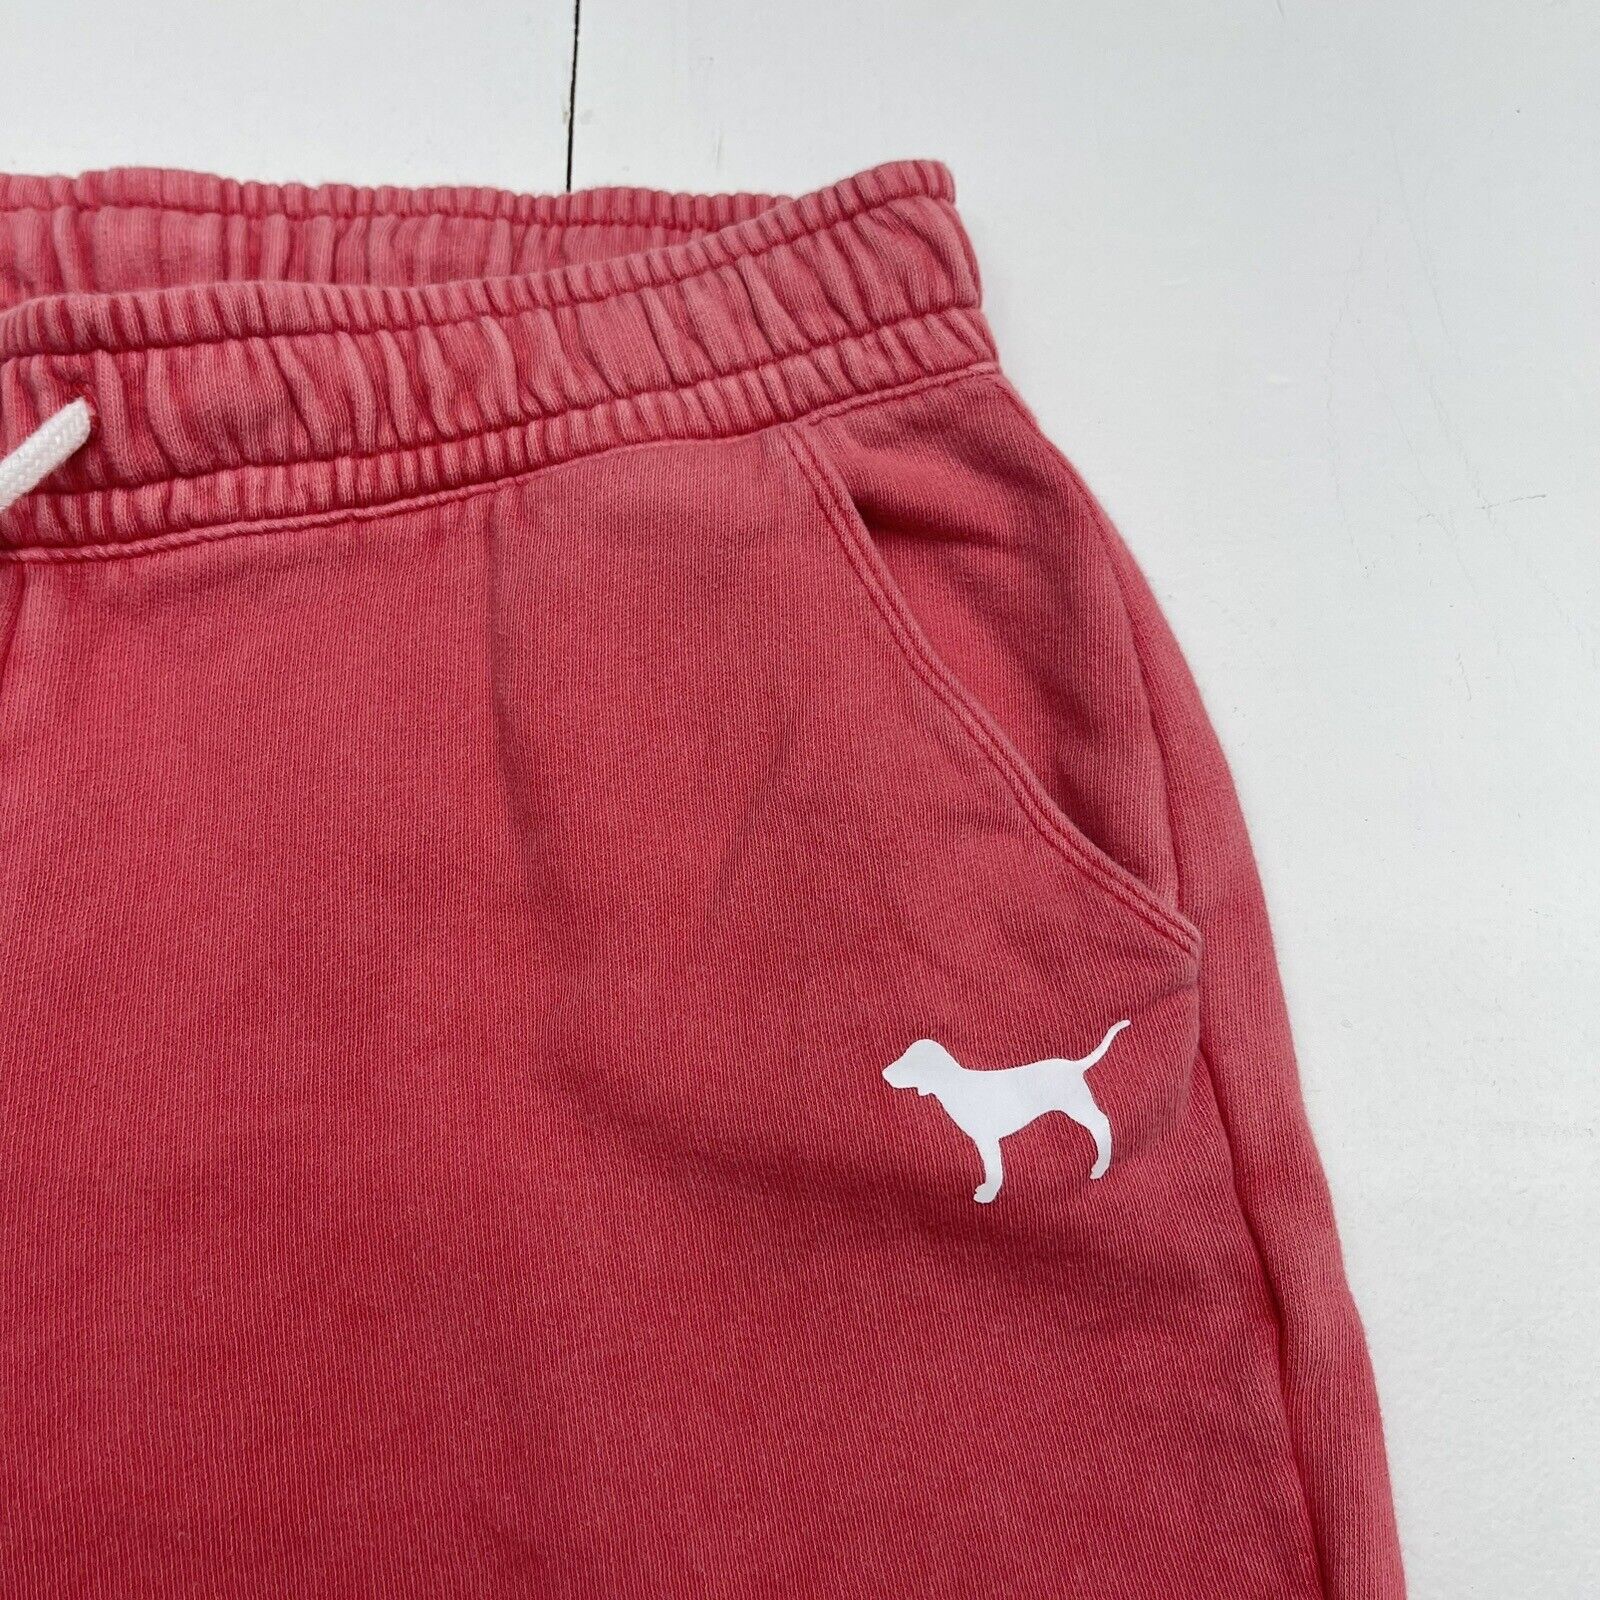 Pink Victoria's Secret Faded Red Jogger Sweatpants Women's Medium